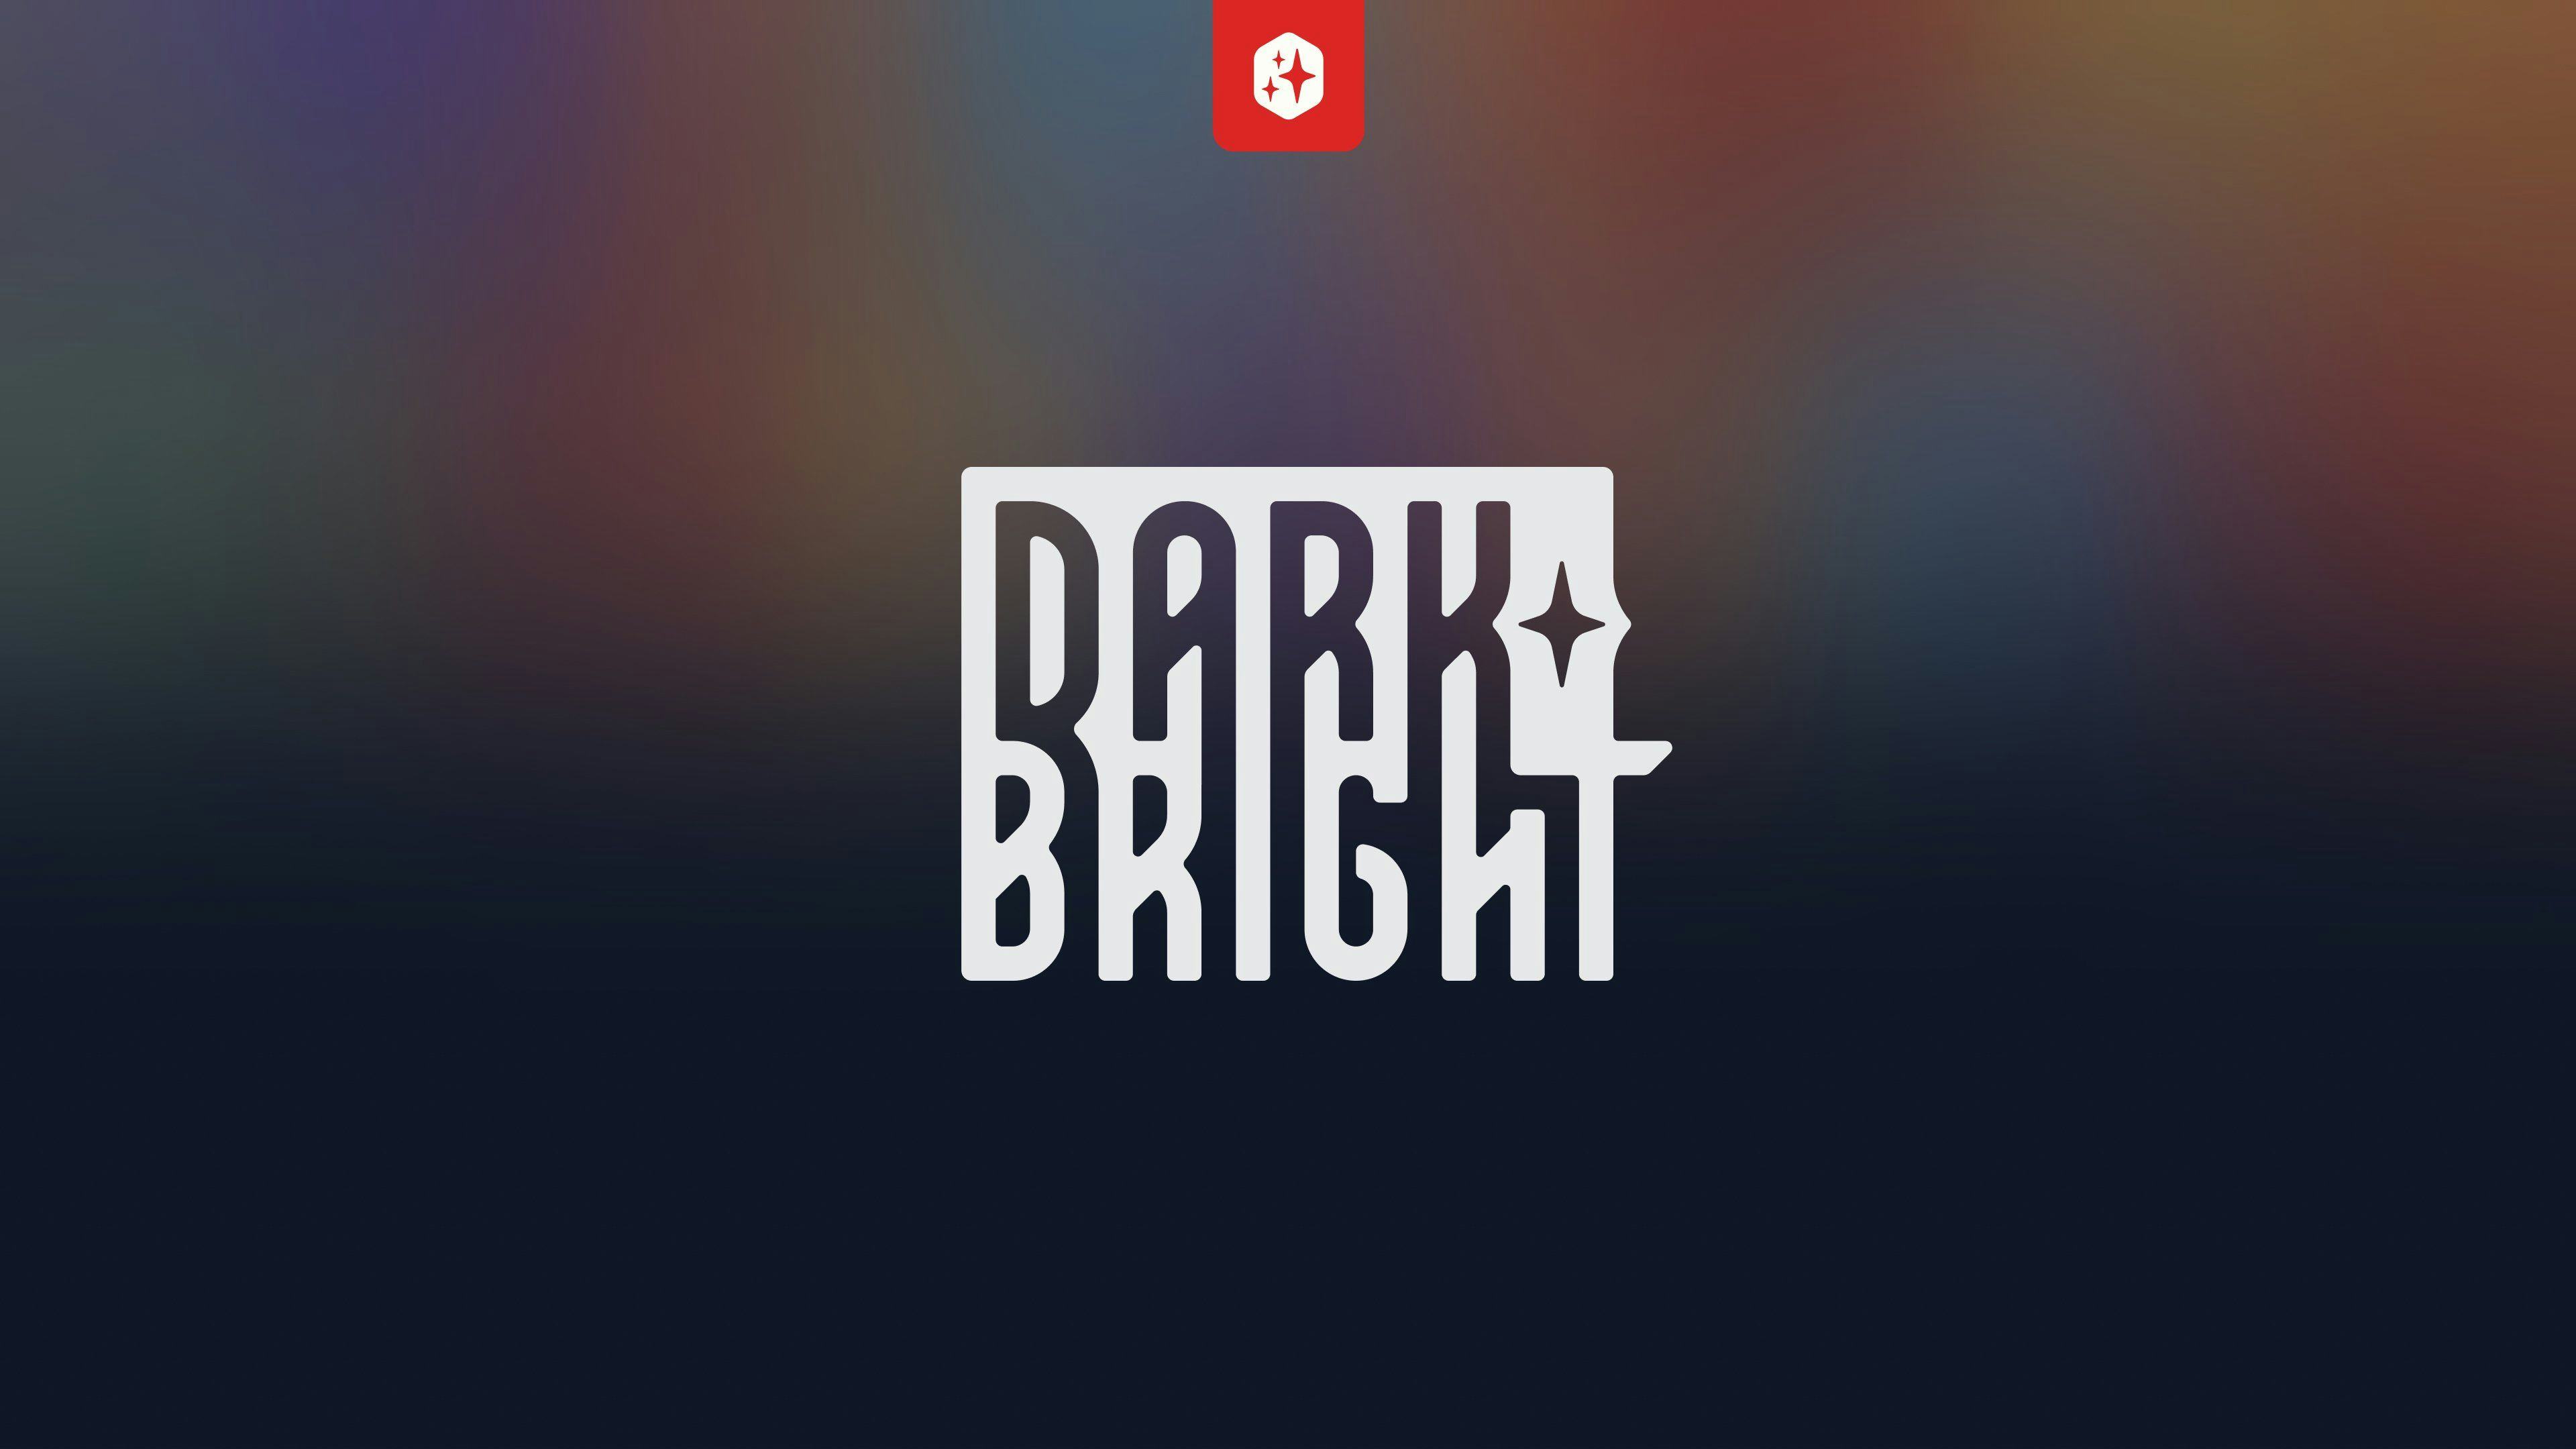 darkbright studios.jpg